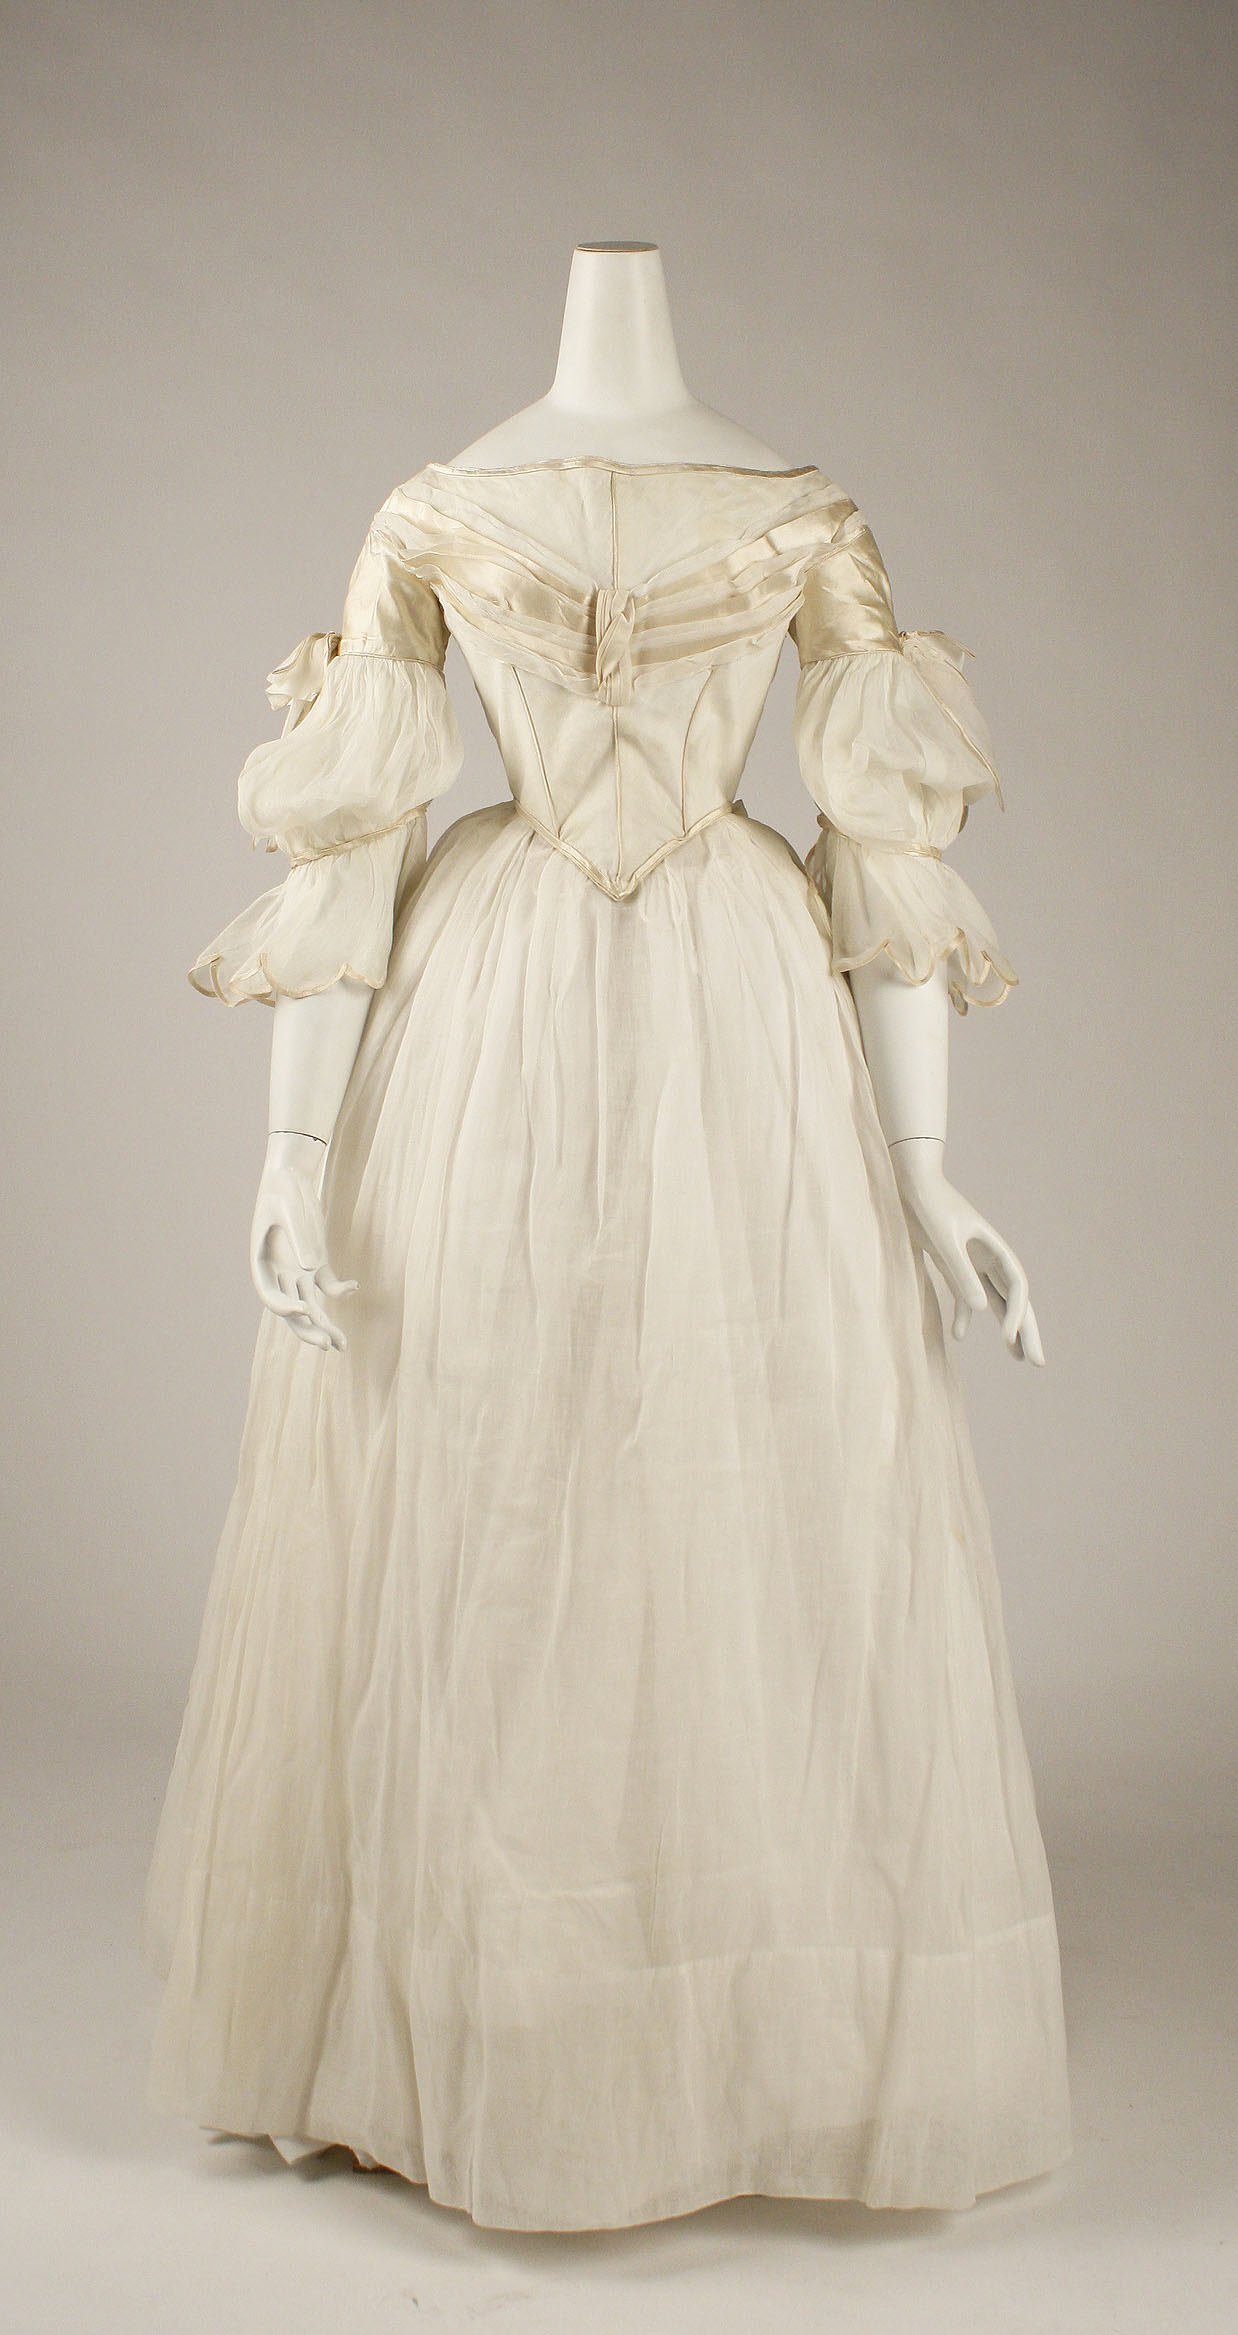 Платья конца 19 века. Бальные платья 19 века бидермейер. Бальные платья конца 19 века Англия. Бальное платье в викторианском стиле 19 века.